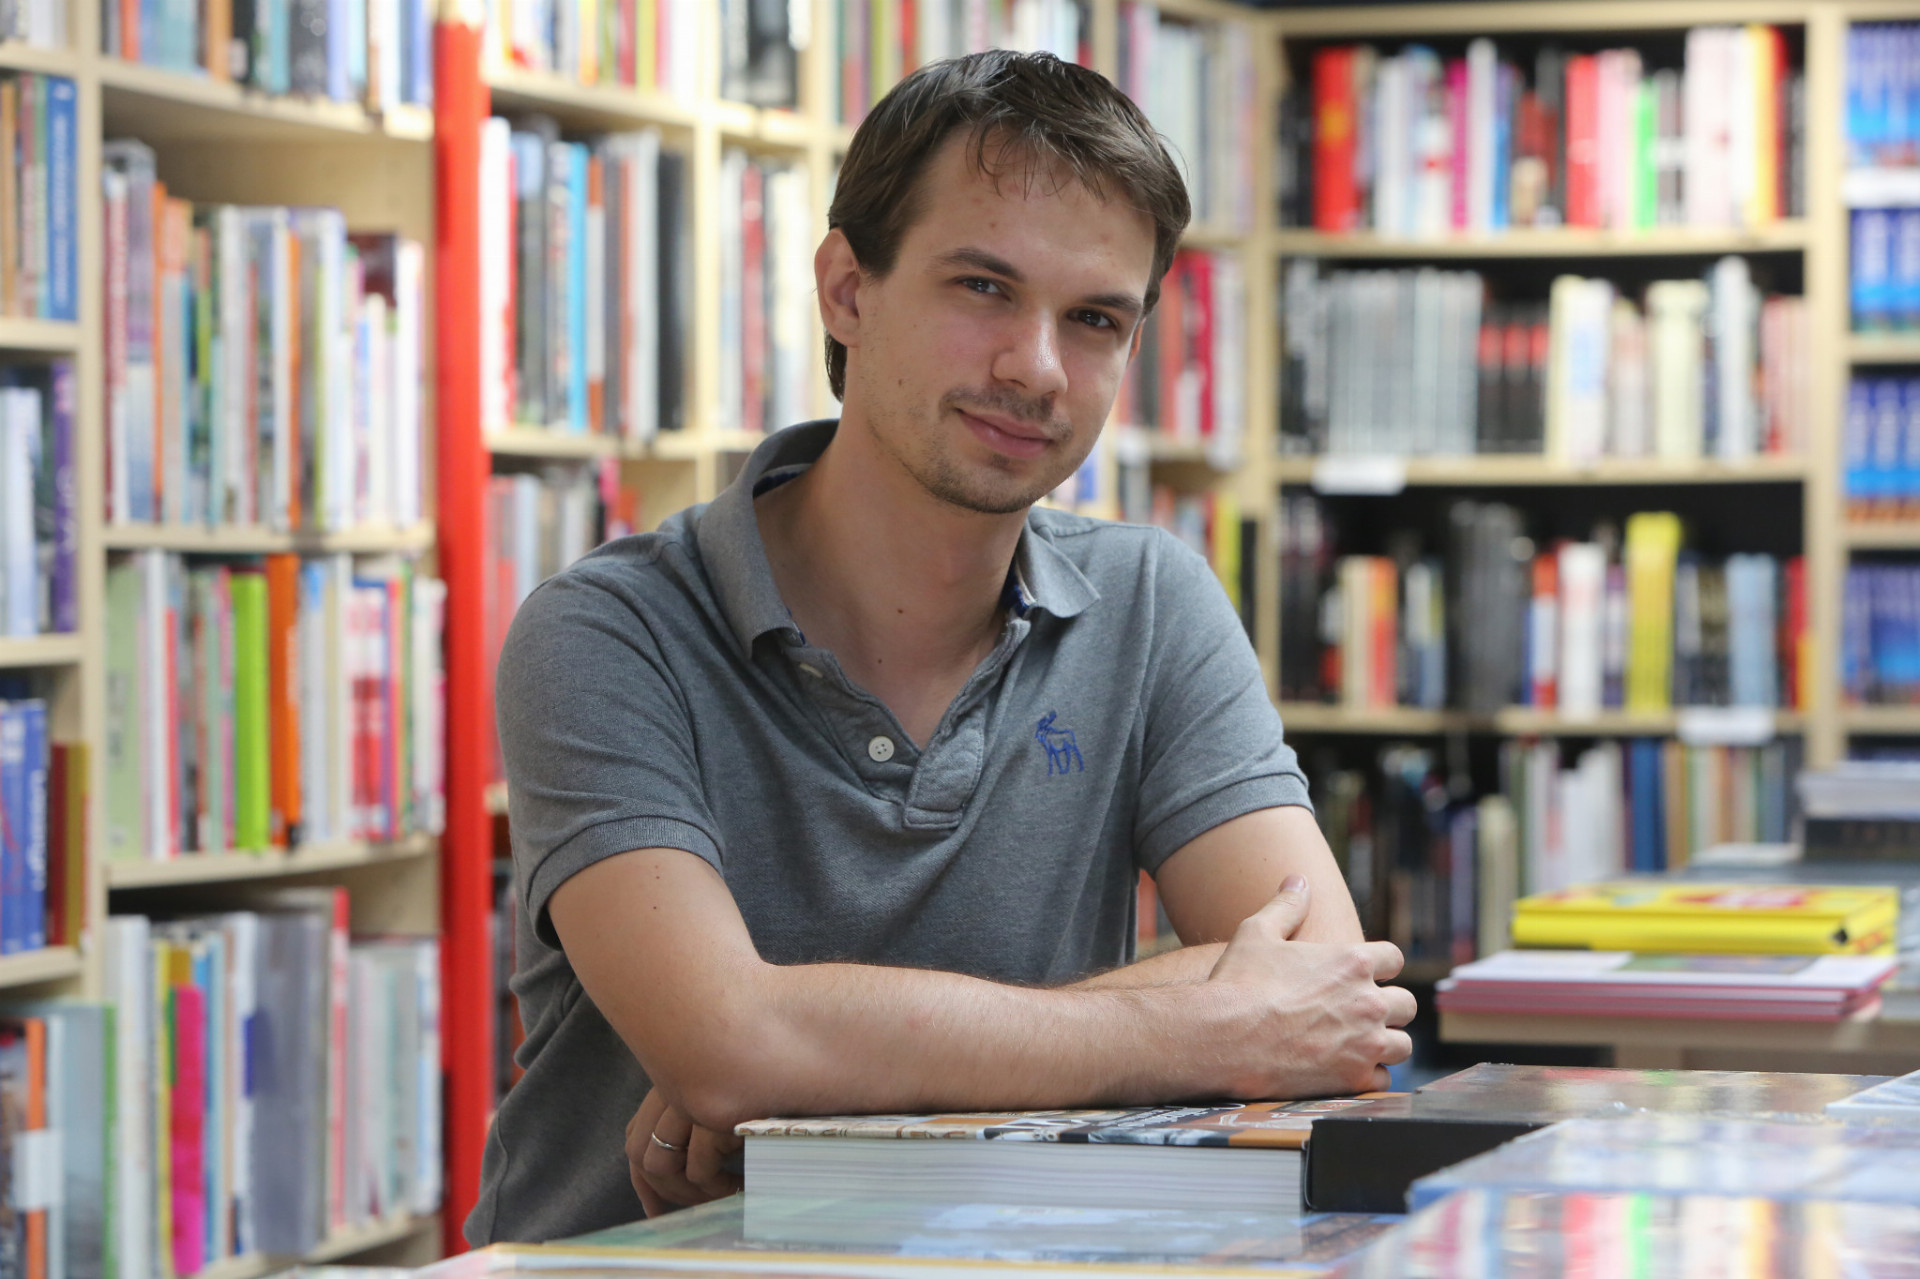 Zakladateľ najväčšieho internetového kníhkupectva Michal Meško vyštudoval manažment a marketing na Univerzite Komenského. V roku 2000 bol spoluzakladateľom stránky Referáty.sk, ktorú o štyri roky neskôr odkúpil portál Atlas.sk.
V roku 2000 stál aj pri vzniku internetového kníhkupectva Martinus.sk, ktoré je dnes jednotkou na Slovensku medzi knižnými e-shopmi a svoje pôsobenie v posledných rokoch rozširuje tiež o kamenné obchody. Samotná značka Martinus vznikla už v roku 1990, keď bratia Miroslav a Jozef Santusovci z Martina založili jedno z prvých slovenských súkromných kníhkupectiev.